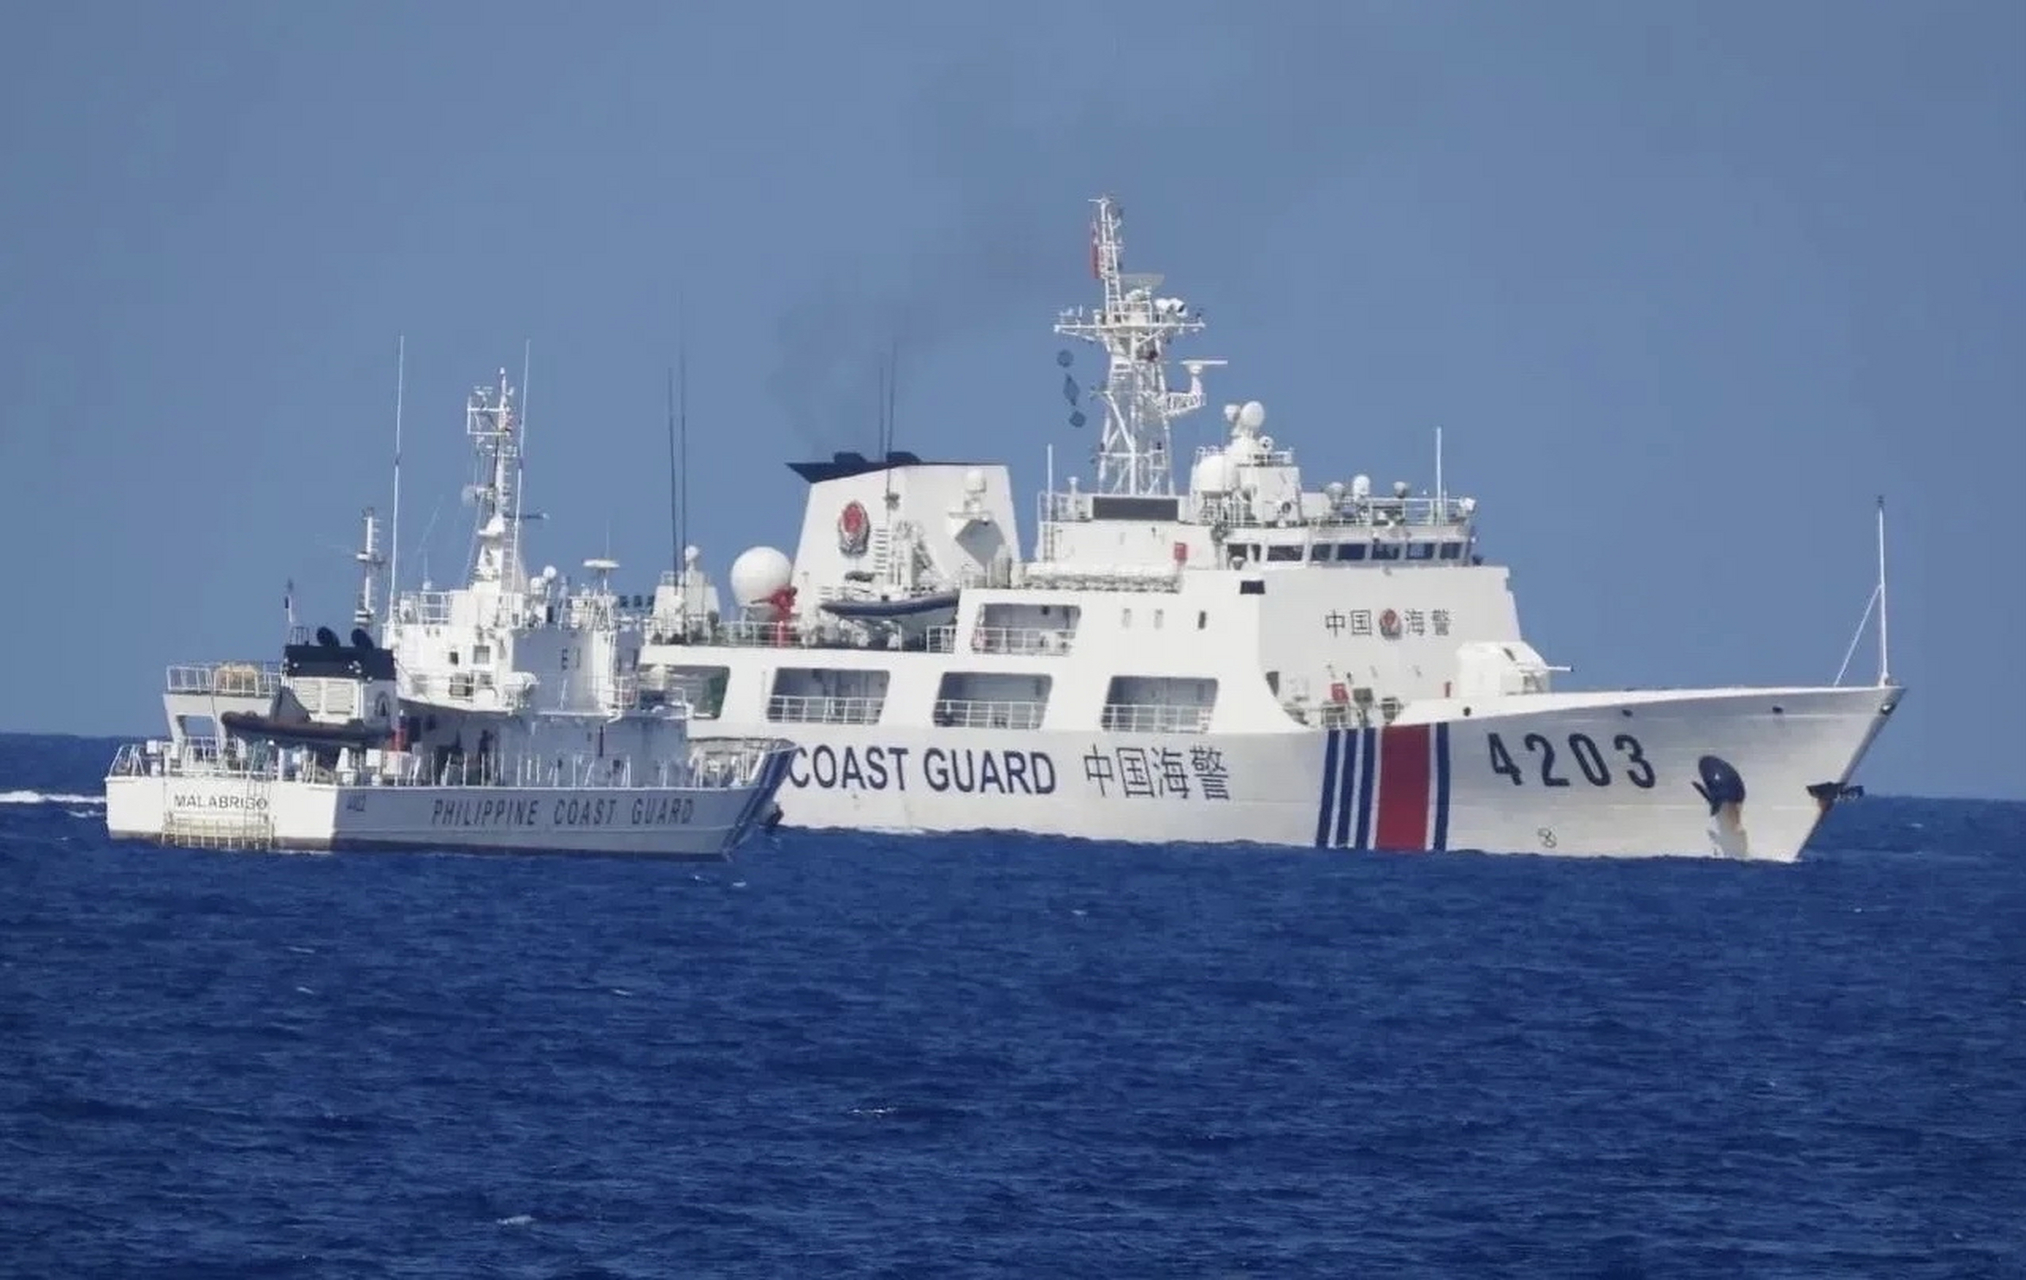 菲船只故意冲撞中国海警证据公布,更多细节曝光